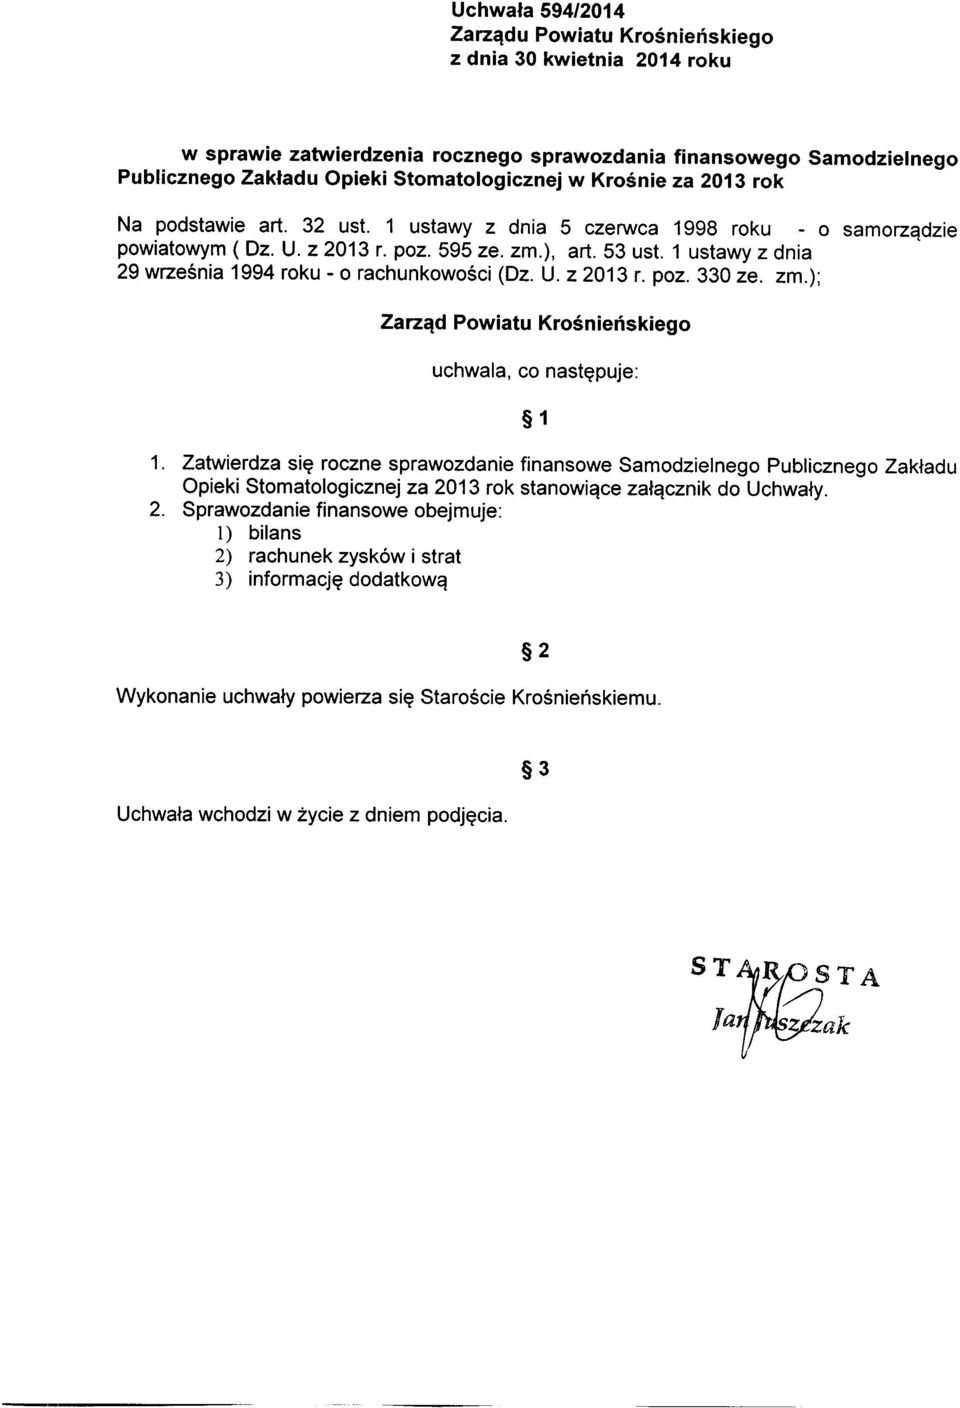 1 ustawy z dnia 29 września 1994 roku - o rachunkowości (Dz. U. z 2013 r. poz. 330 ze. zm.); Zarząd Powiatu Krośnieńskiego uchwala, co następuje: 1 1.